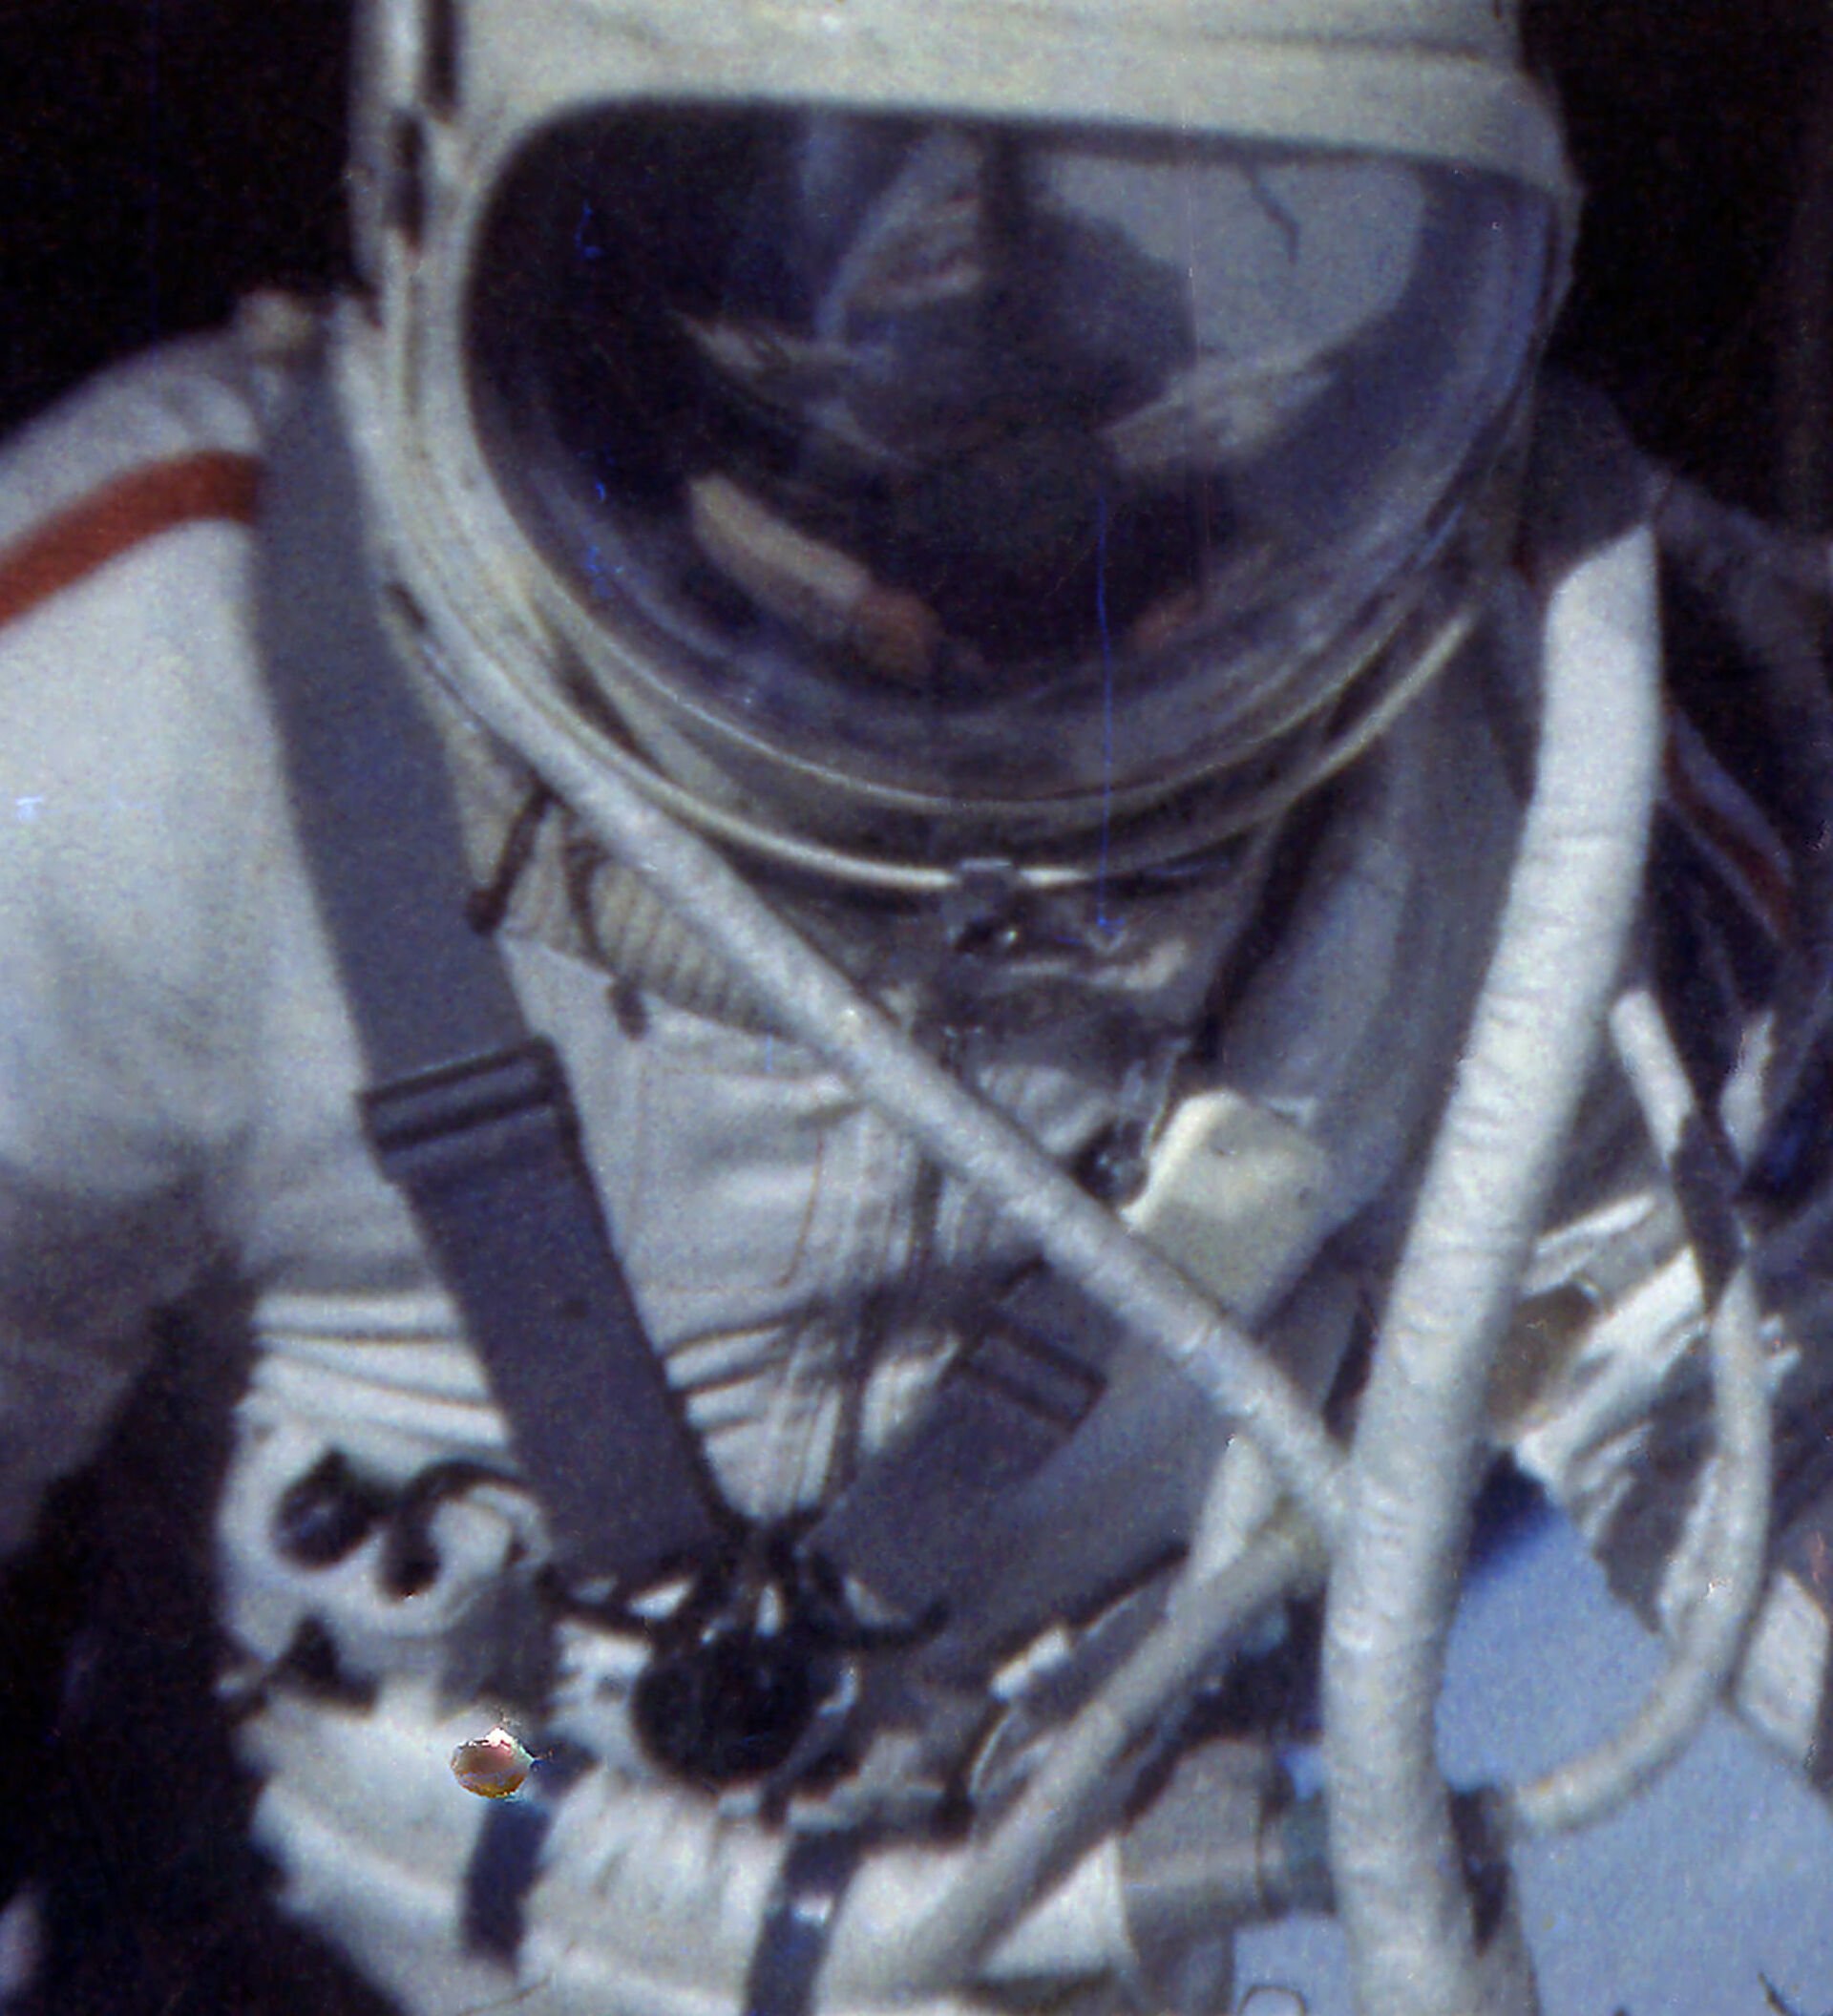 Фамилия космонавта вышедшего в открытый космос. Восход-2 Леонов в космосе.